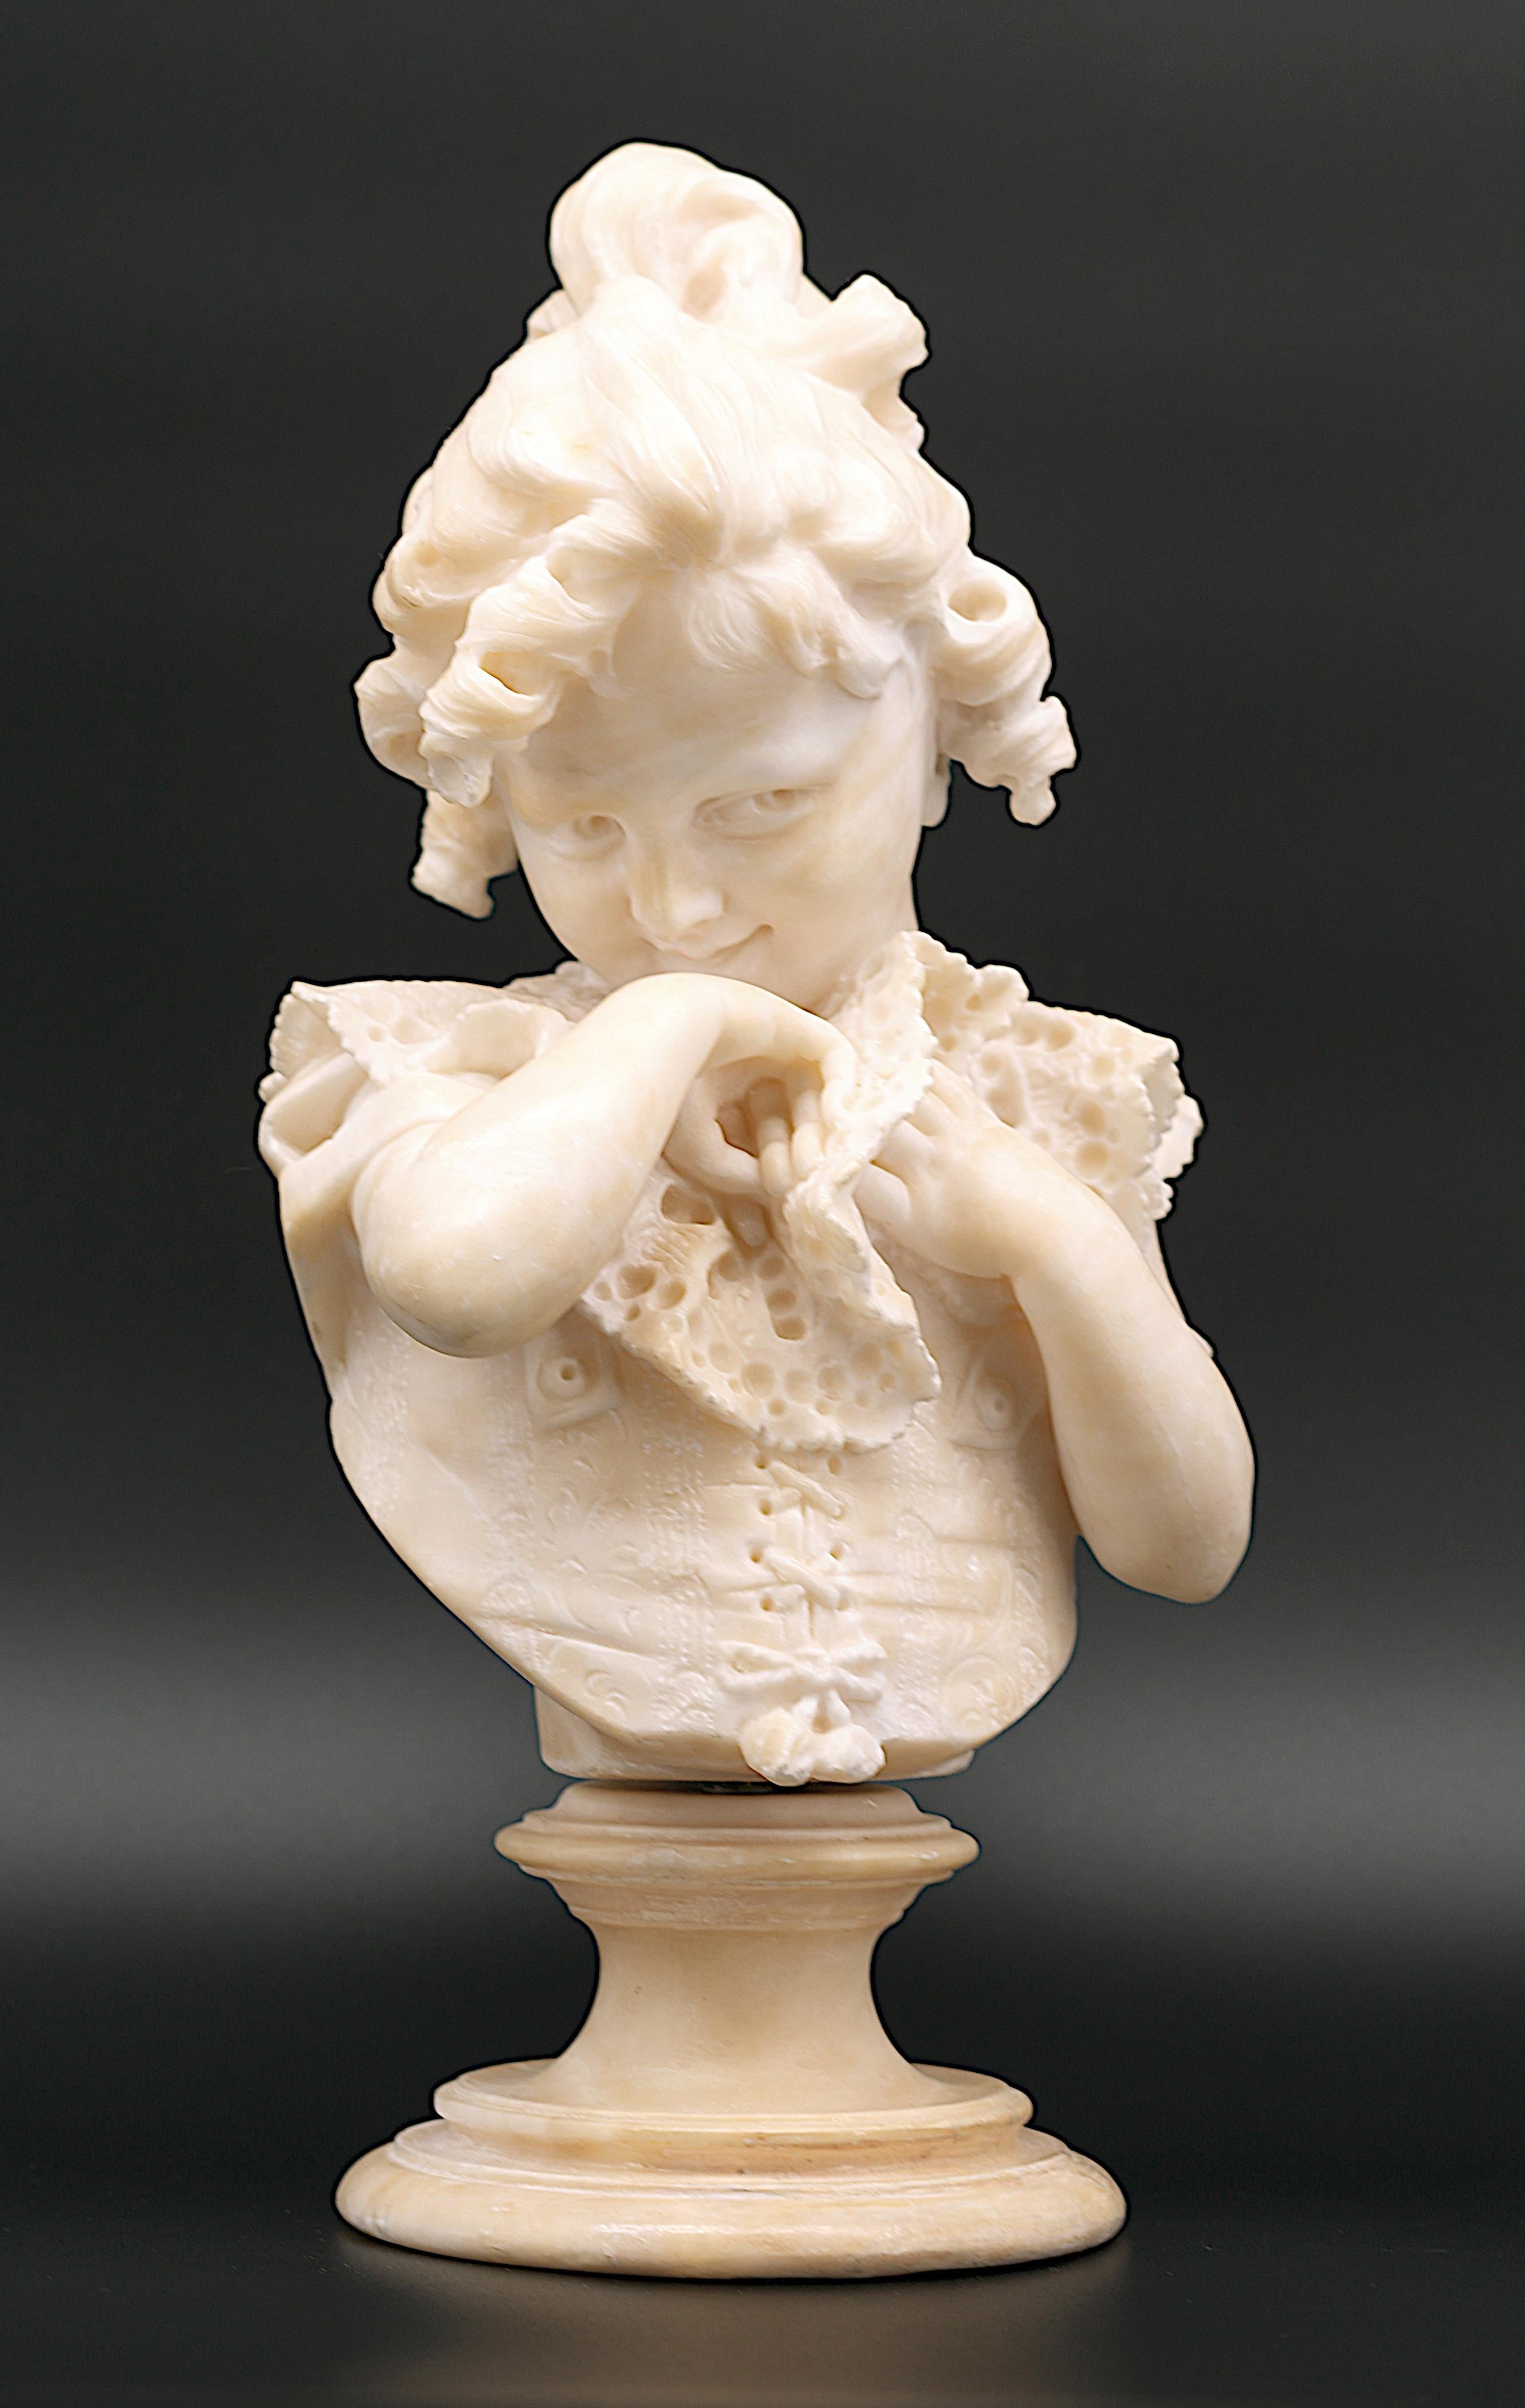 Buste de petite fille en albâtre, sculpture d'Emilio Fiaschi (1858-1941), France, années 1890. Sculpture directe. Les détails du petit corset et du col en dentelle sont très finement réalisés. L'œuvre remarquable d'un sculpteur hors pair. Hauteur :